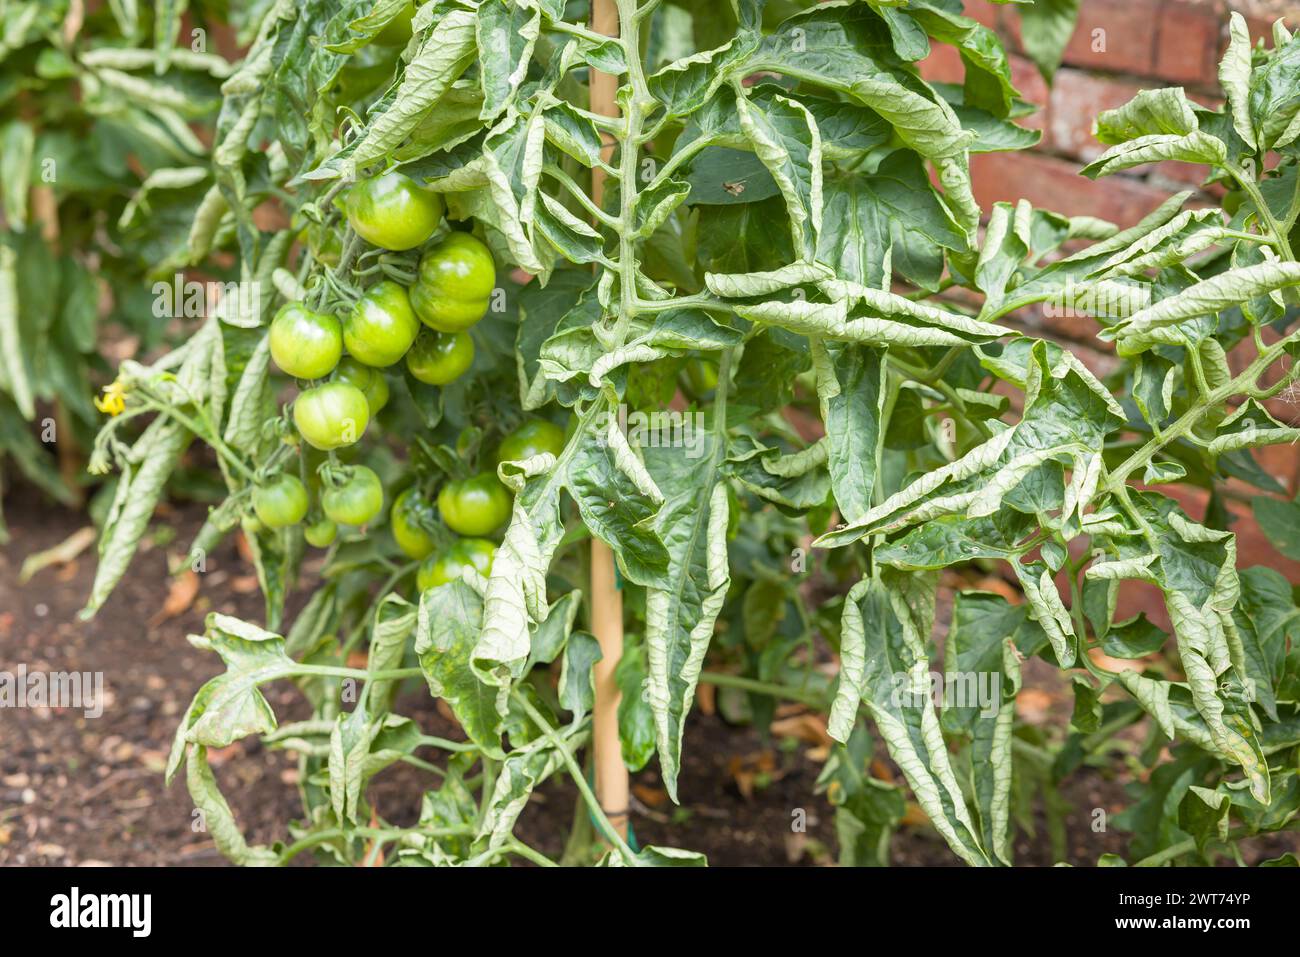 Primo piano di foglie arricciate sulle piante di pomodoro in una patch vegetale. Ricci di foglie di pomodoro, un problema comune nei giardini del Regno Unito. Foto Stock